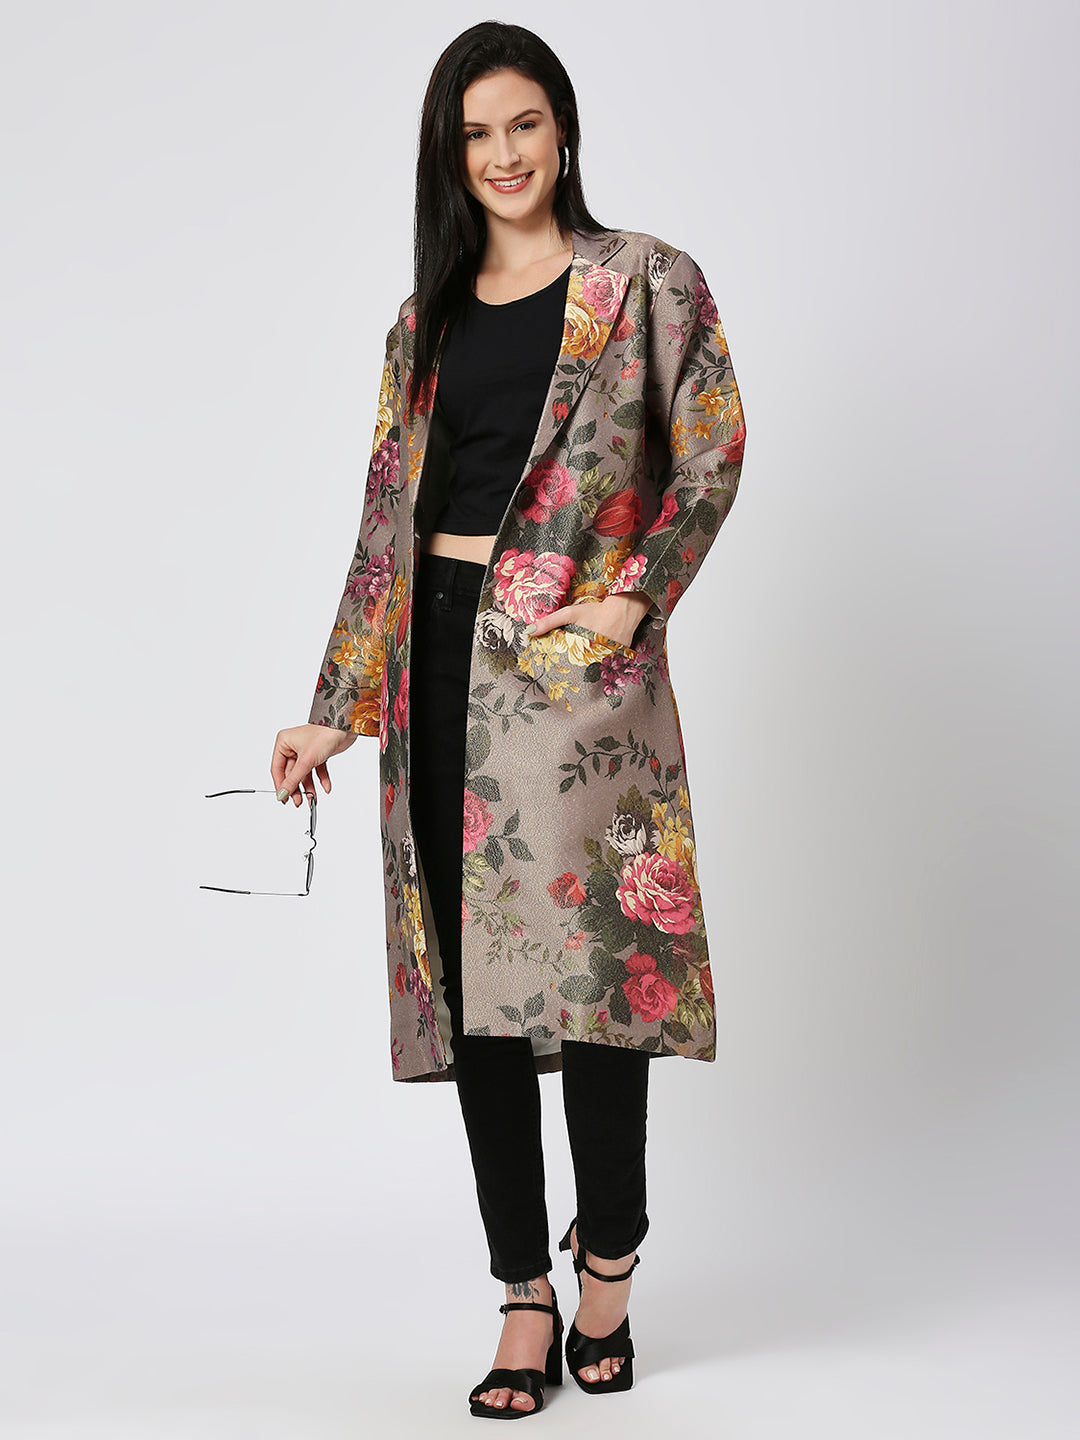 Grey Multicolored Floral Designed Brocade Metallic Long Jacket